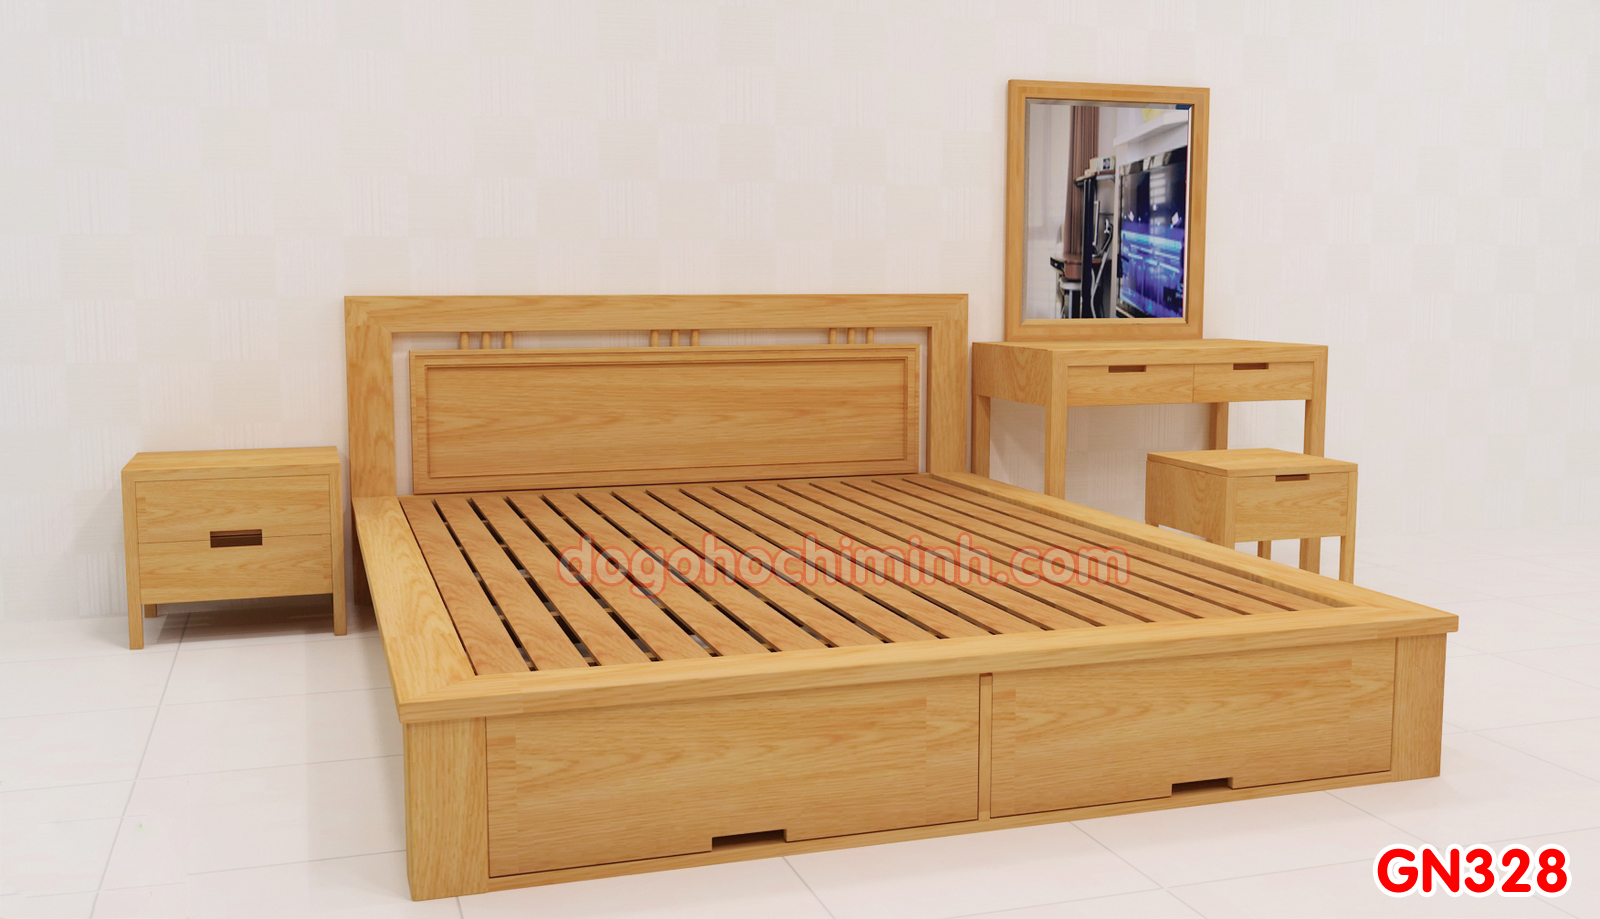 Giường ngủ gỗ đẹp cao cấp giá rẻ GN328